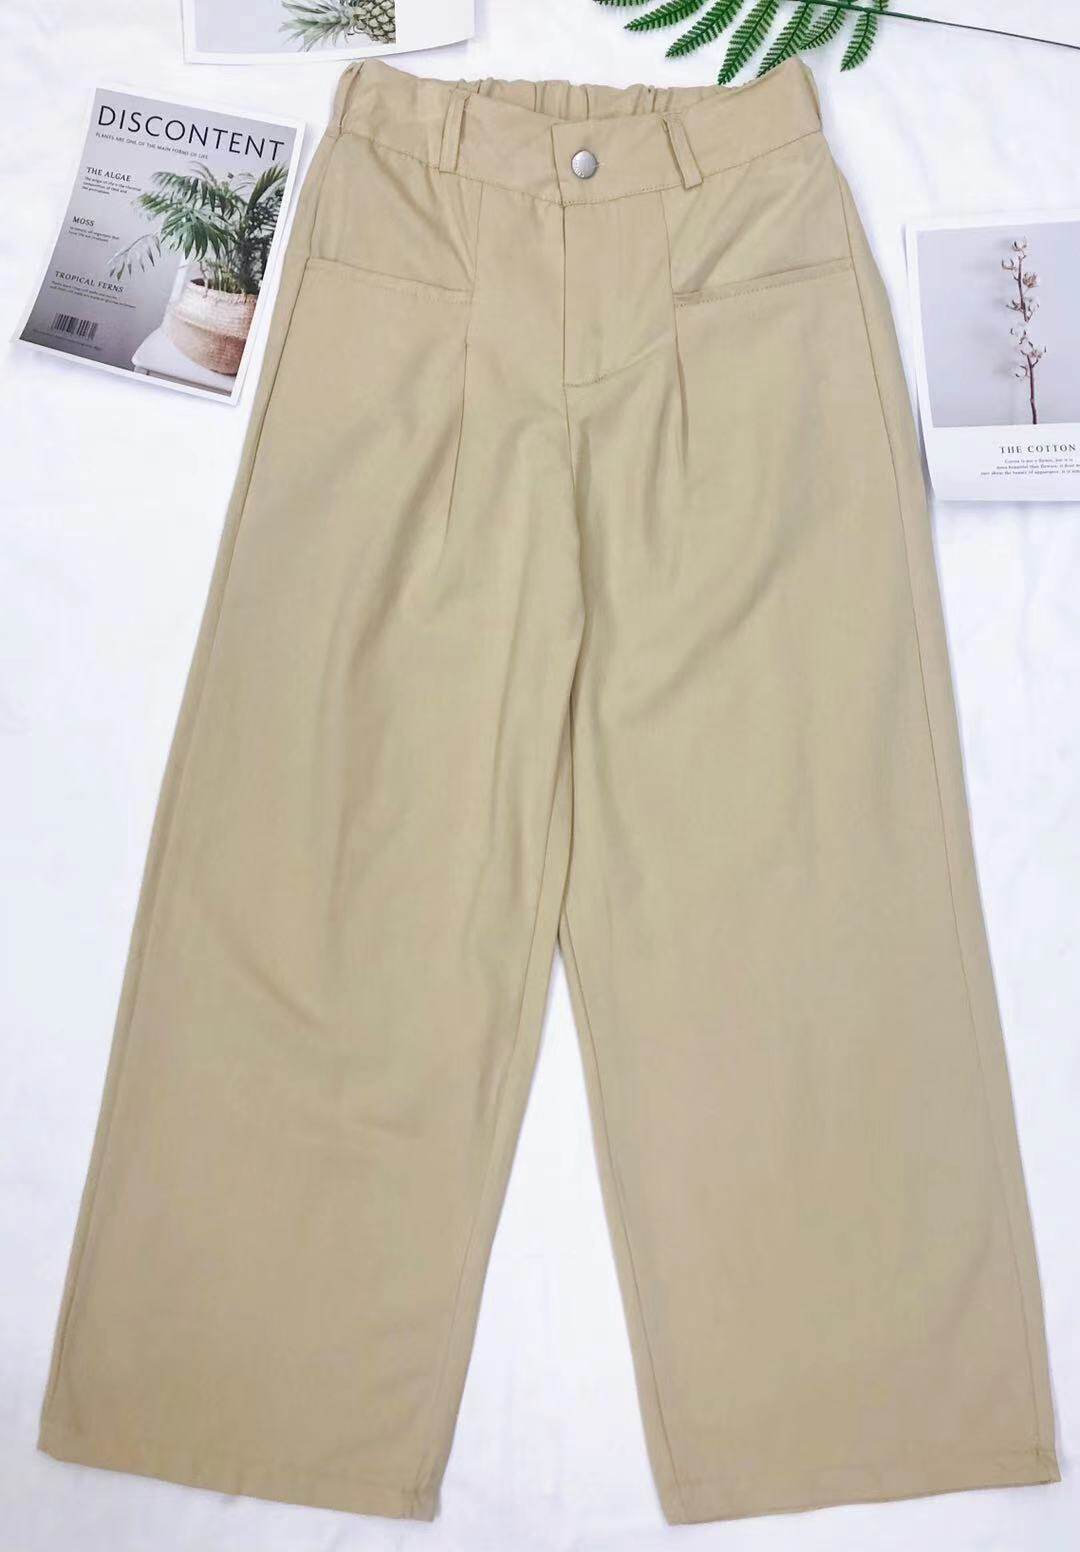 กางเกงขายาว กางเกงแฟชั่นกางเกงผู้หญิงทรงเกาหลีขากว้าง ฟรีไซด์เอวยืดไซด์ใหญ่ ทรงวัยรุ่น ผ้าพื้น